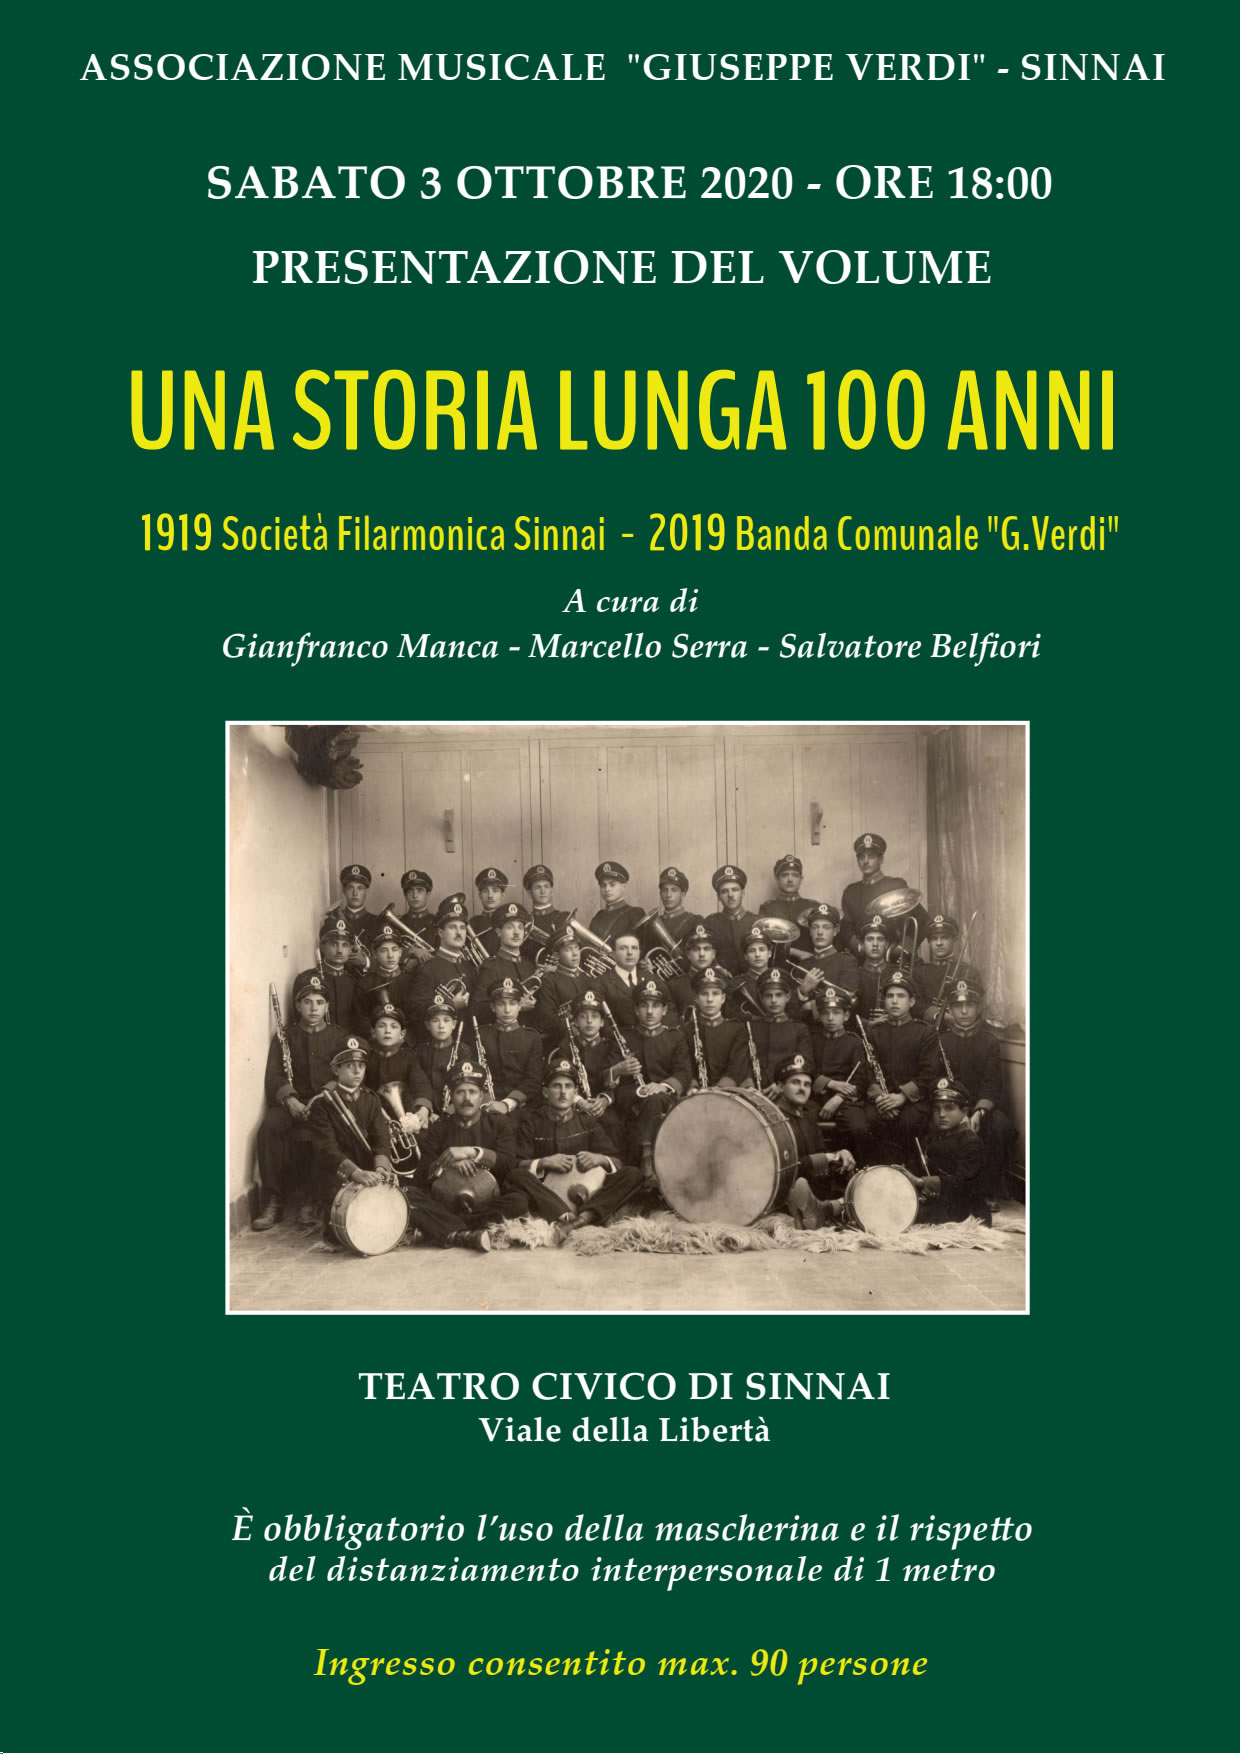 Presentazione volume "Una storia lunga 100 anni" - Associazione Musicale "Giuseppe Verdi" - Sinnai